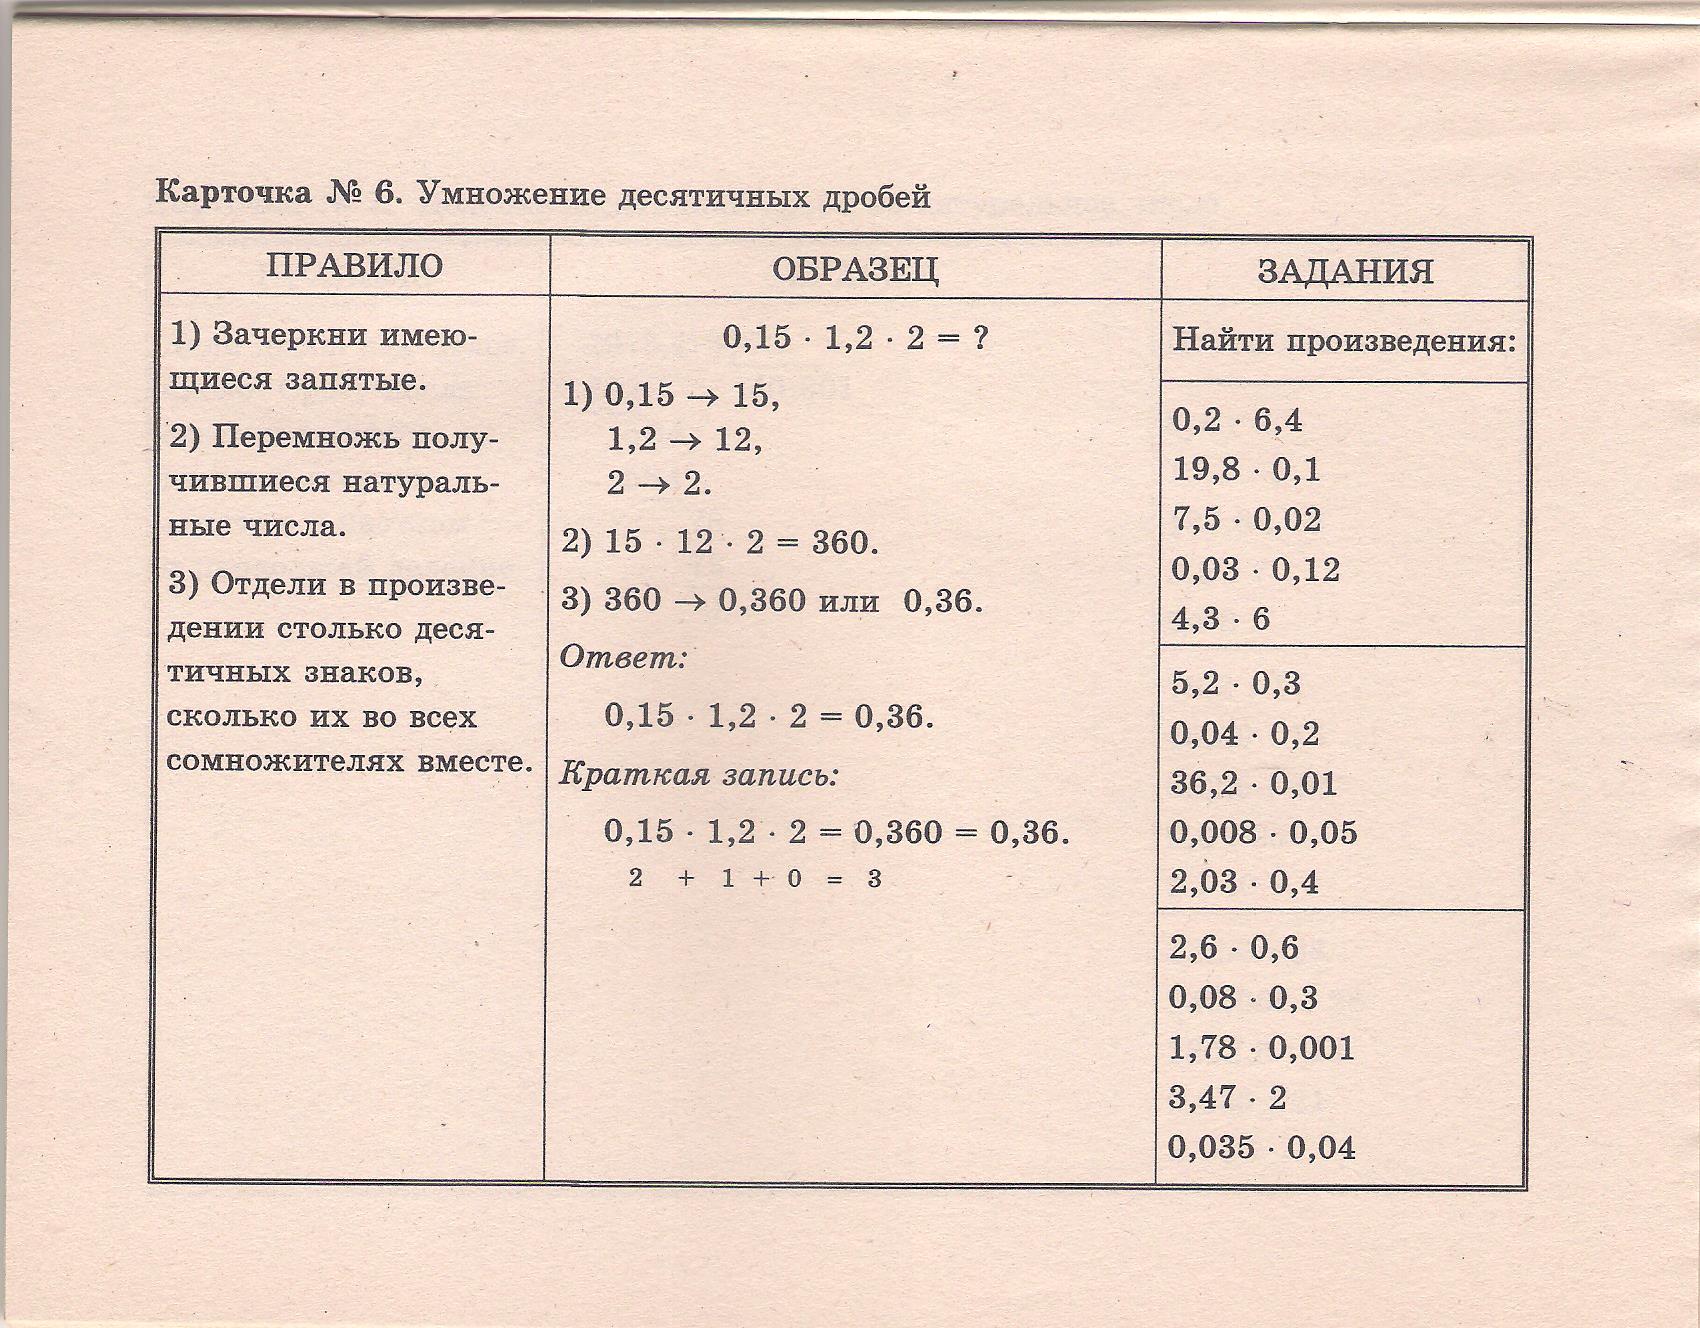 Карточки для коррекции знаний по математике в 5-6 классах по Г.Г. Левитасу